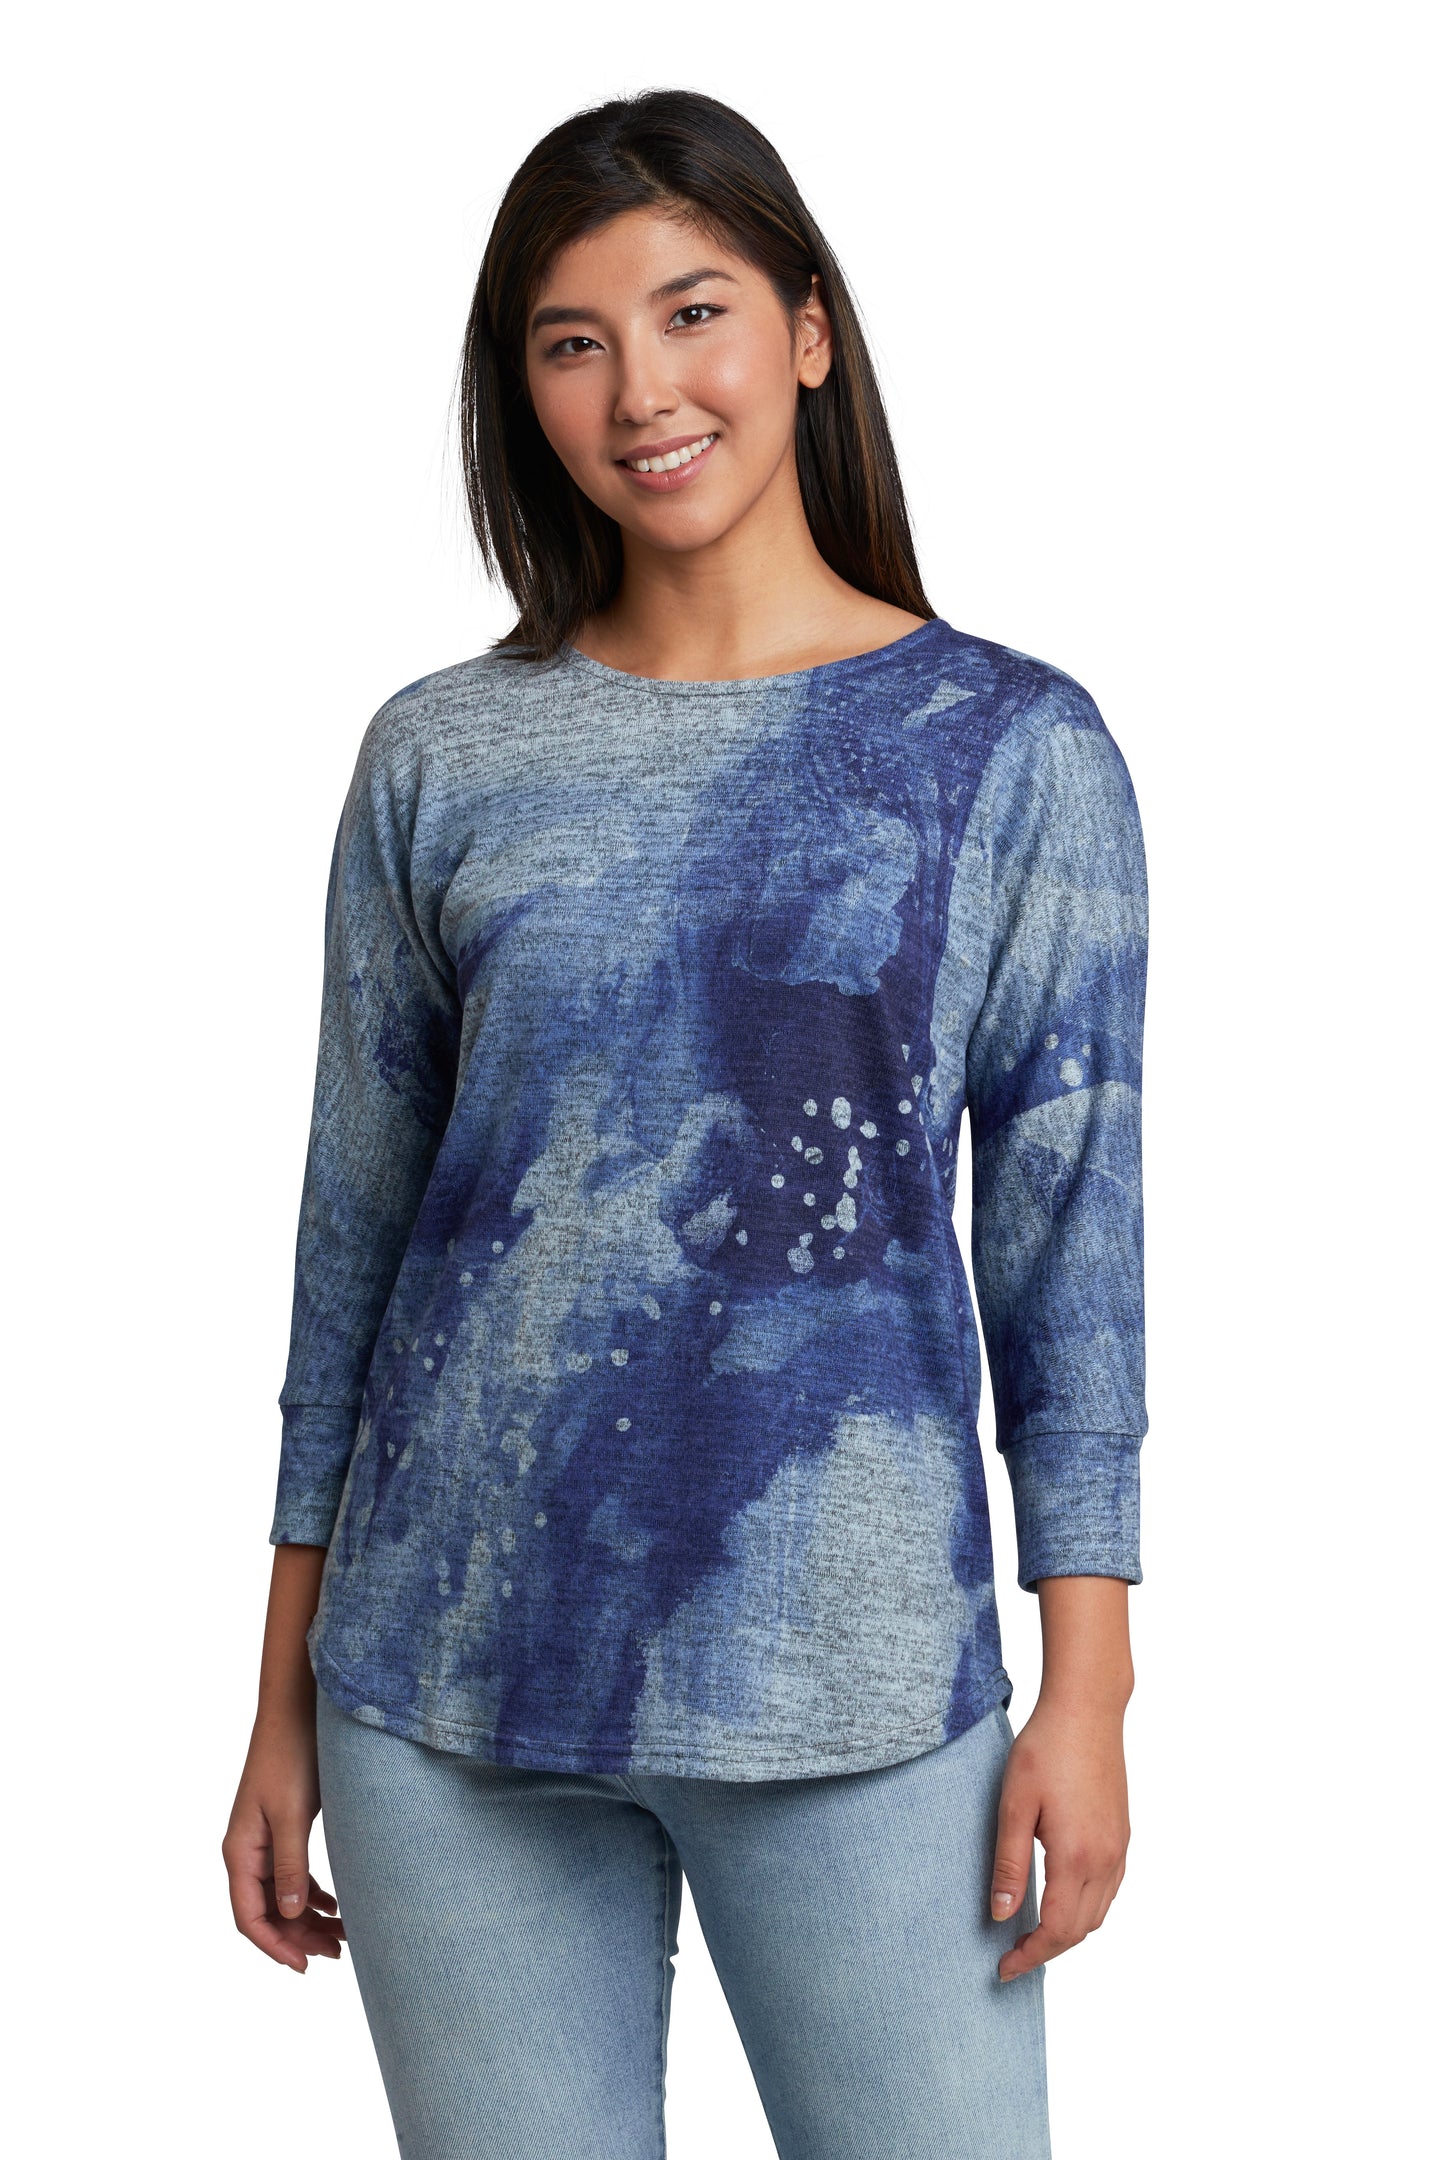 Blue Blue 3/4 dolman sleeve sweater knit top